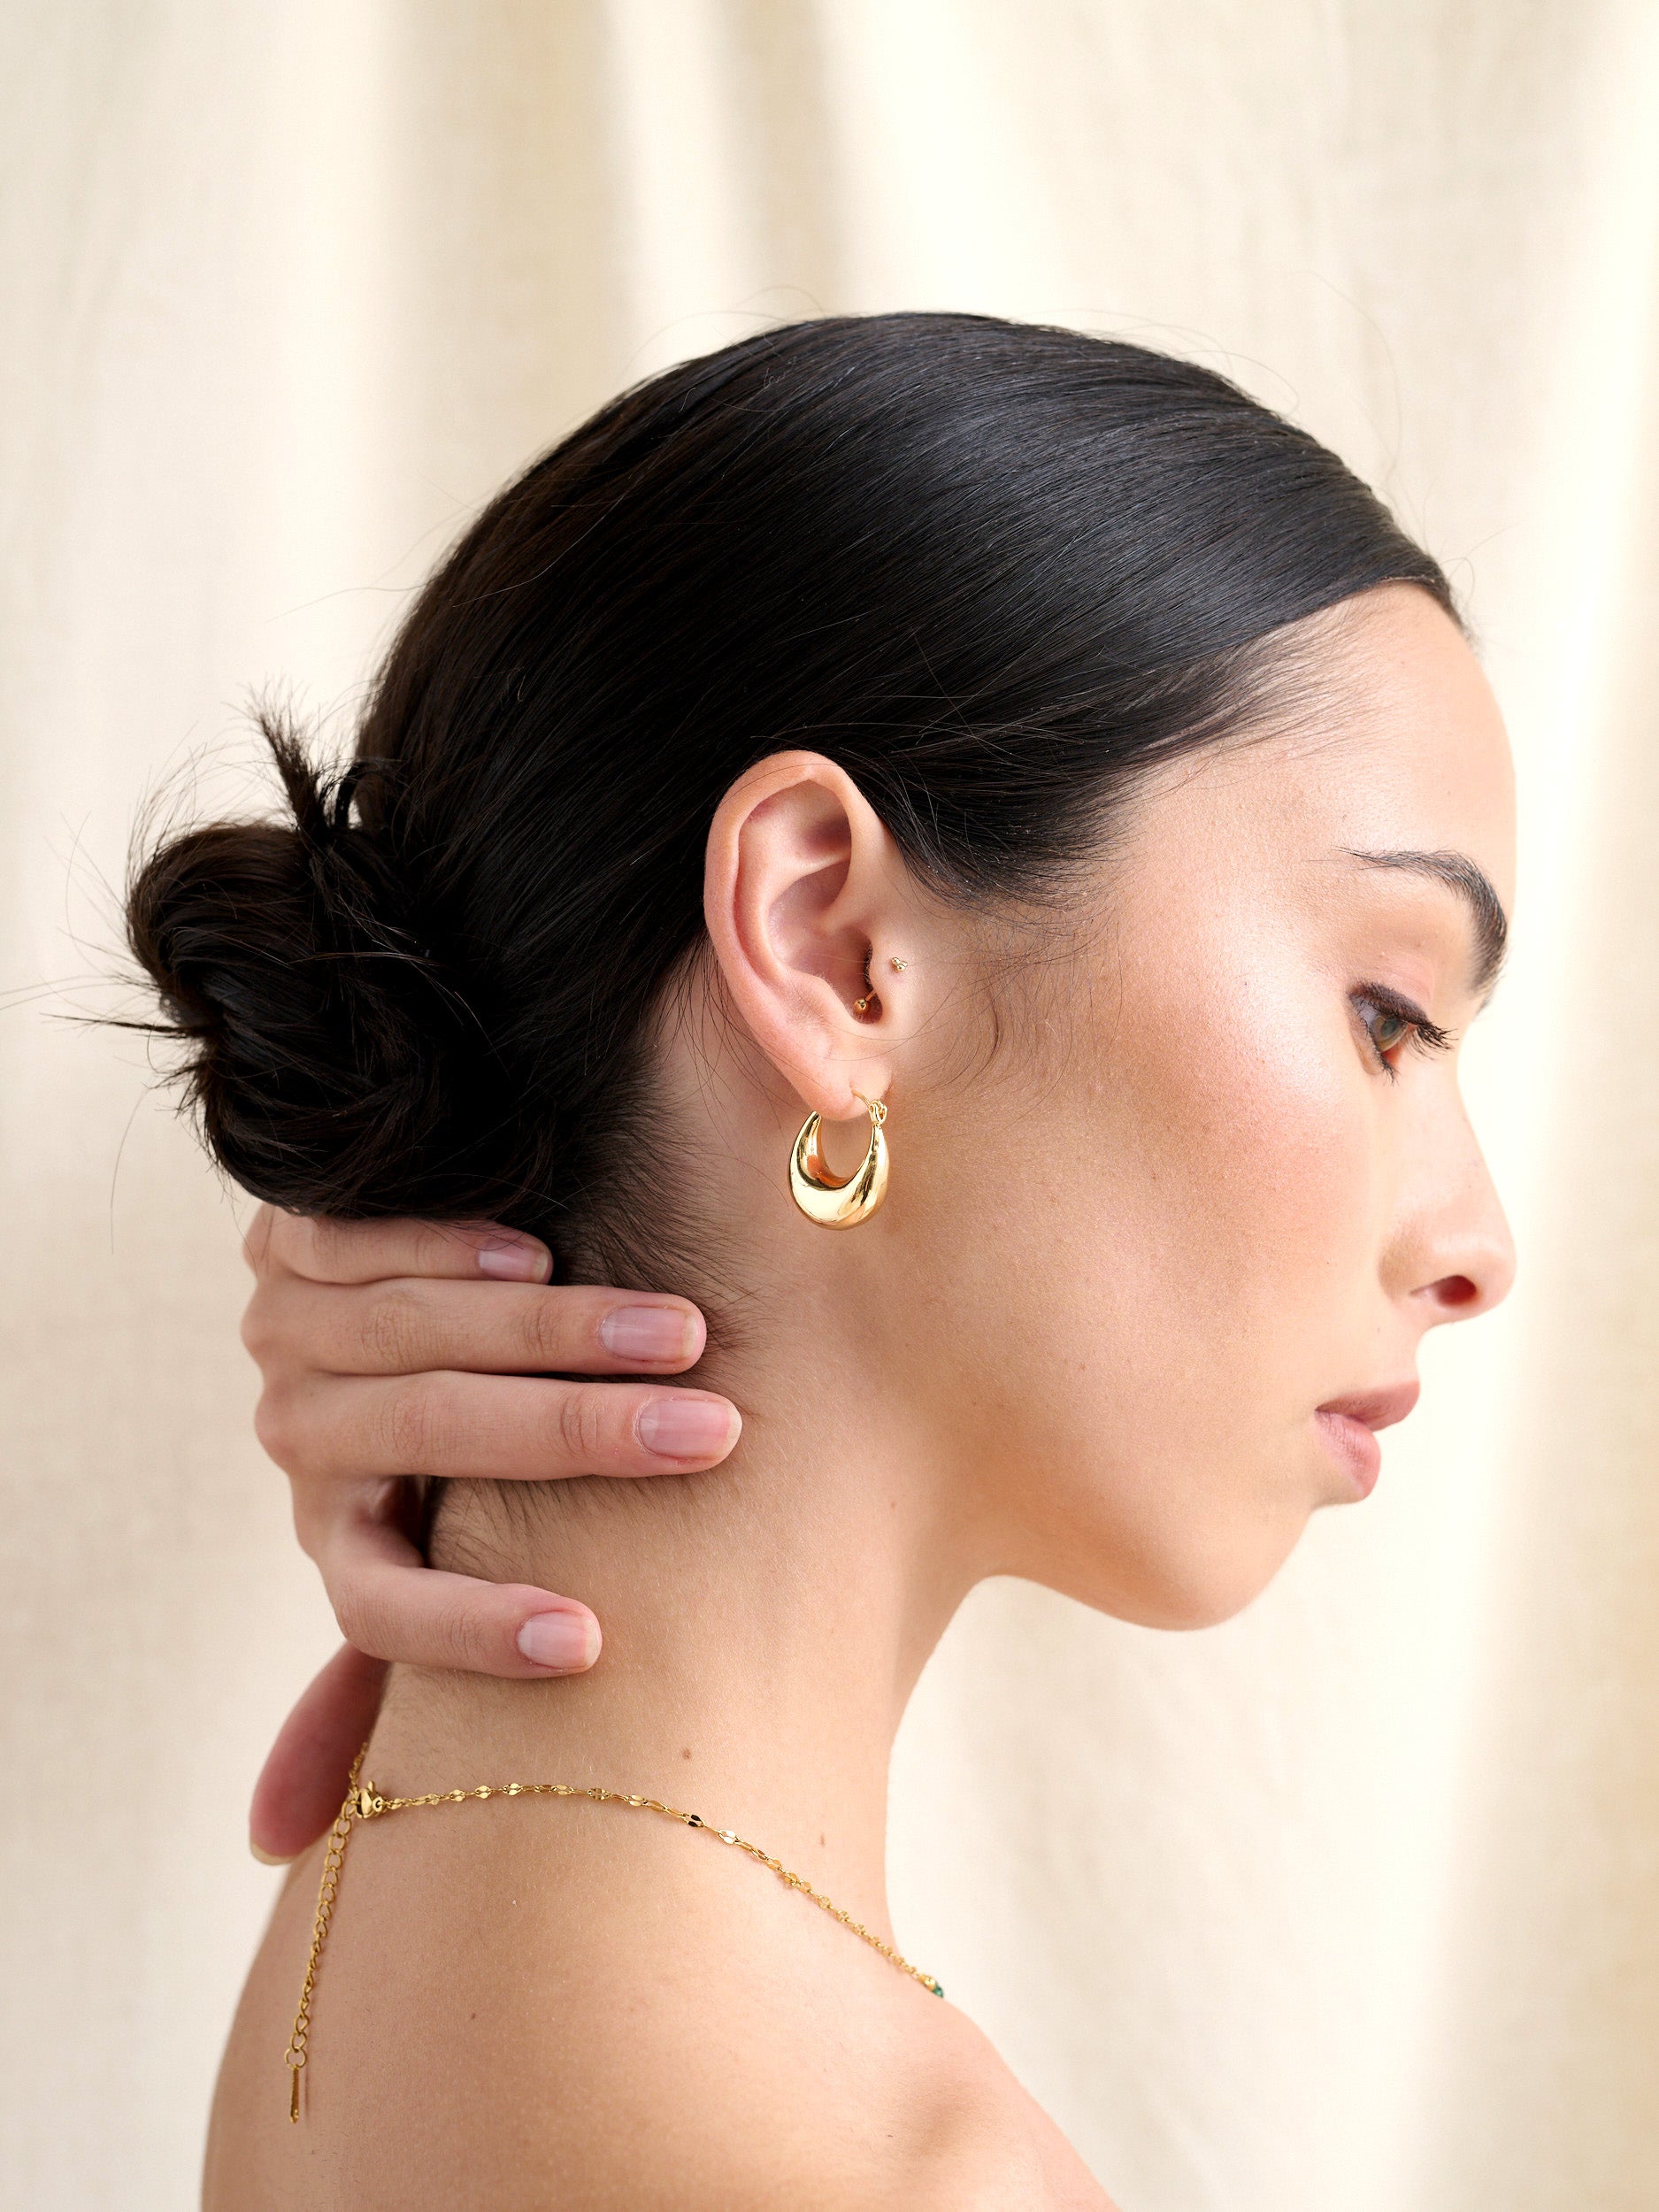 Linda Hoop 18K Gold Plated Earrings